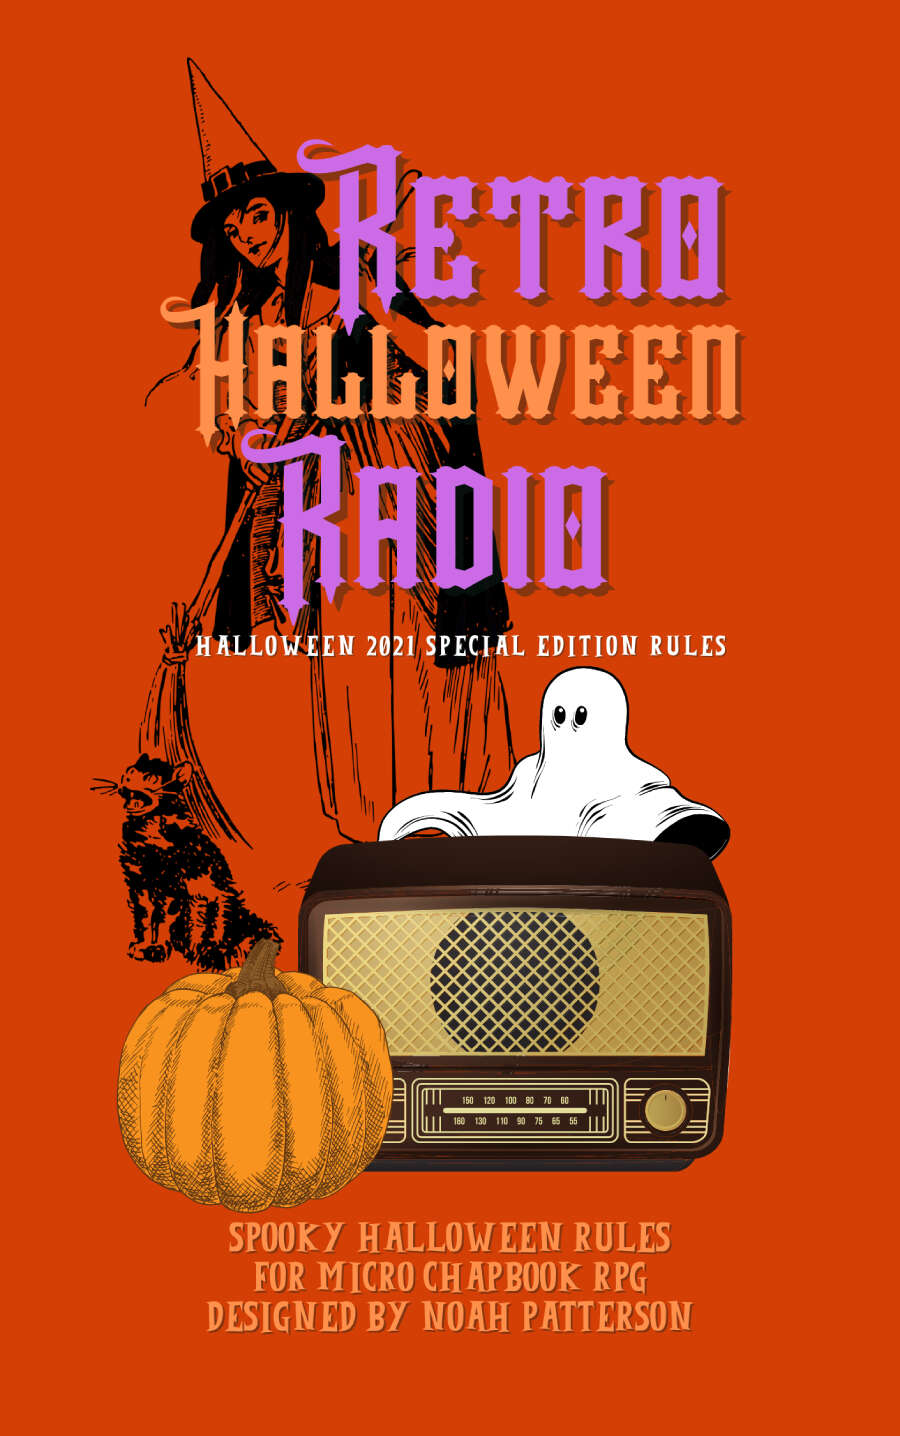 Retro Halloween Radio